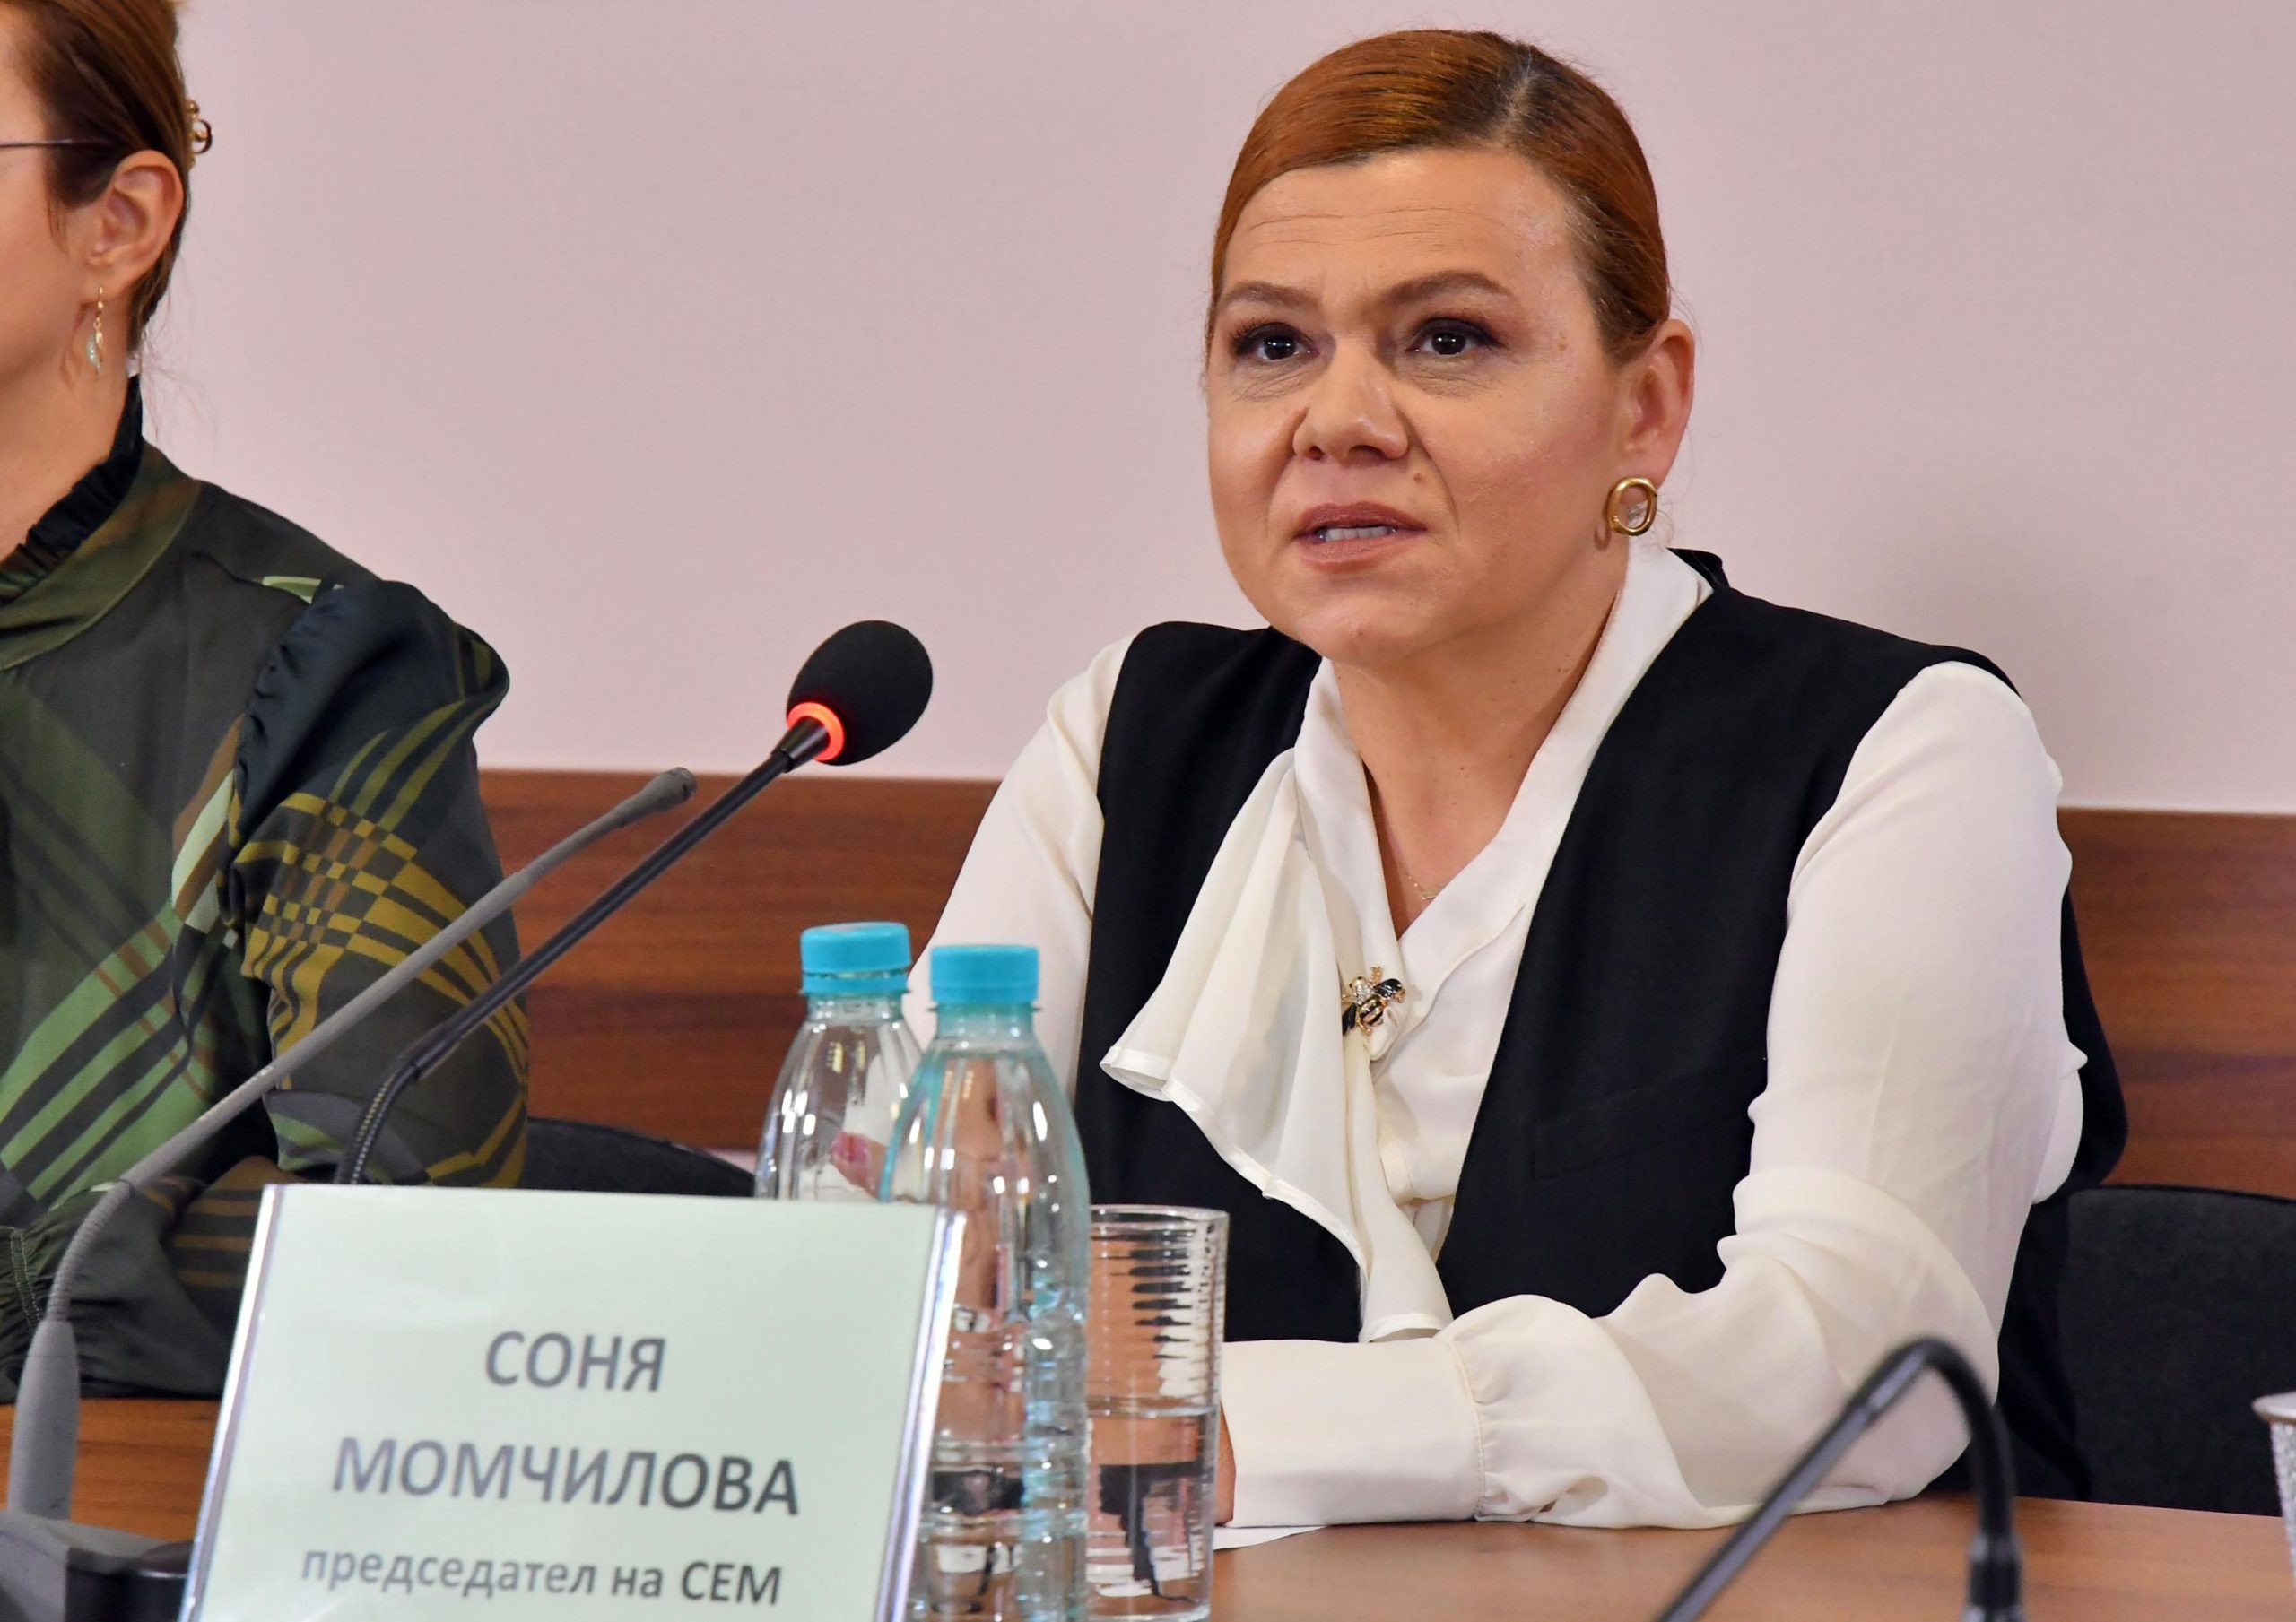 Програмният съвет на Българското национално радио взе решение да не